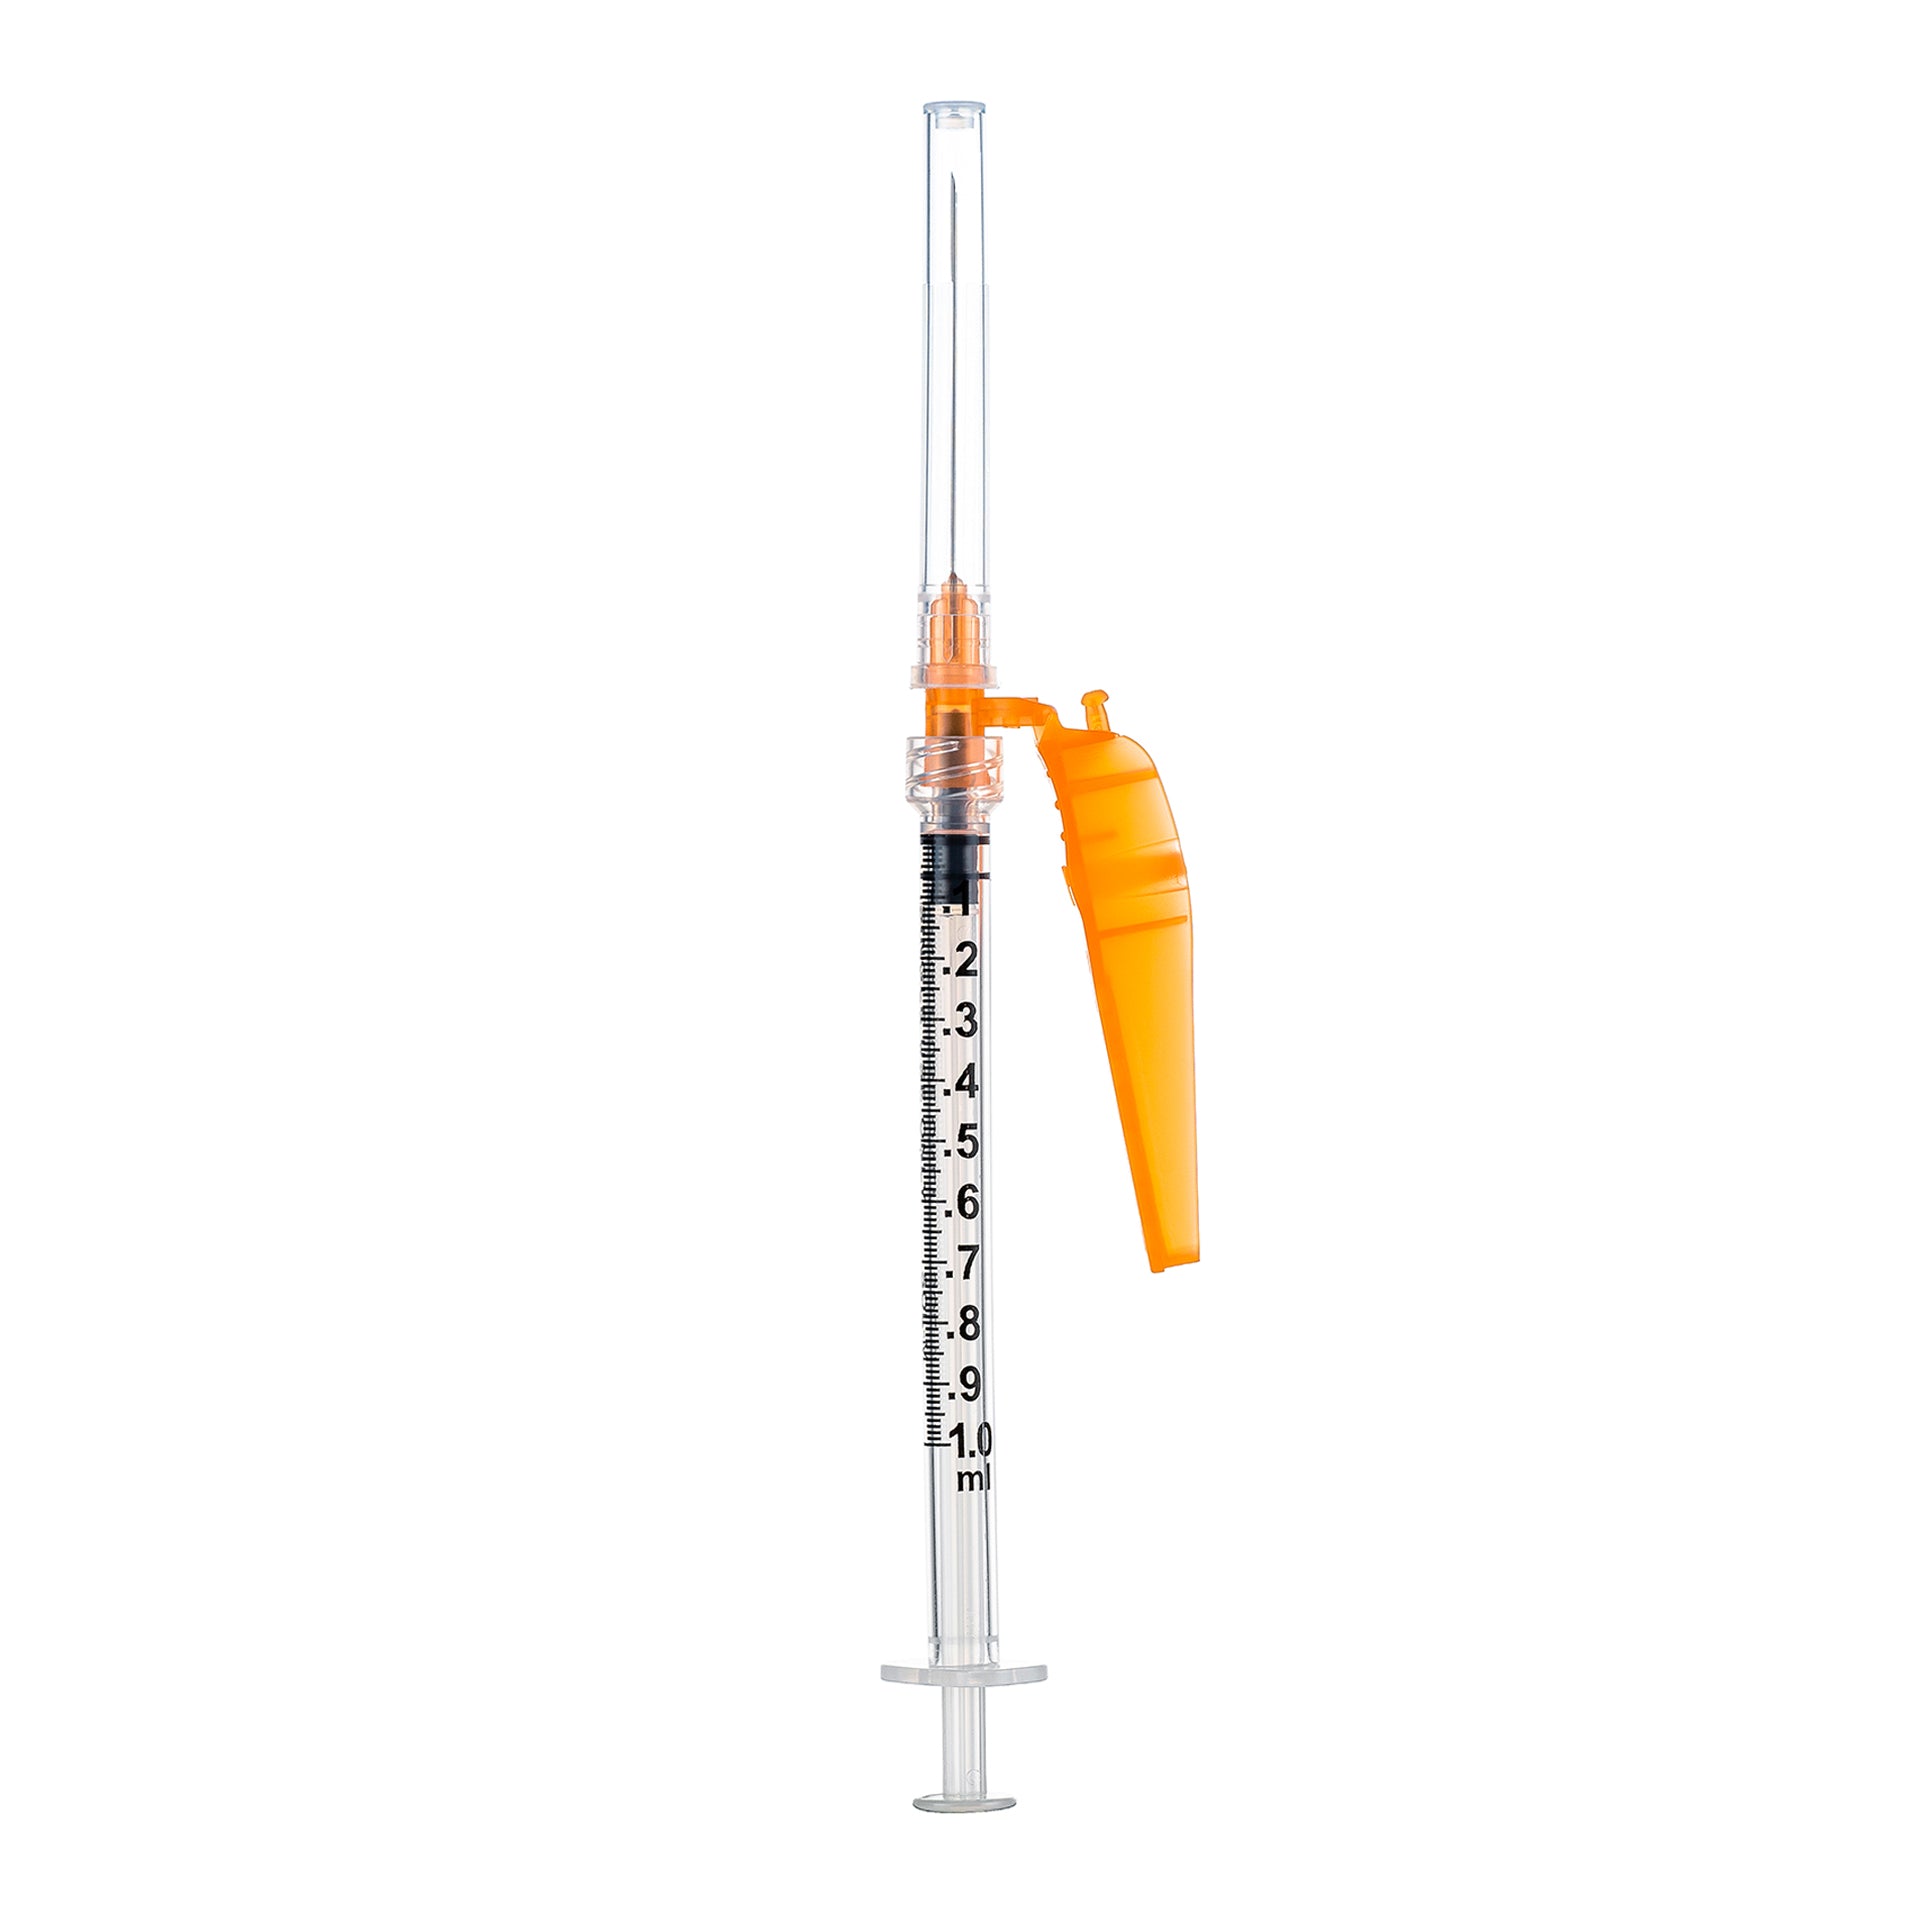 BX/50 - SOL-CARE 3ml Luer Lock Syringe w/Safety Needle 23G*1 (needle aside)